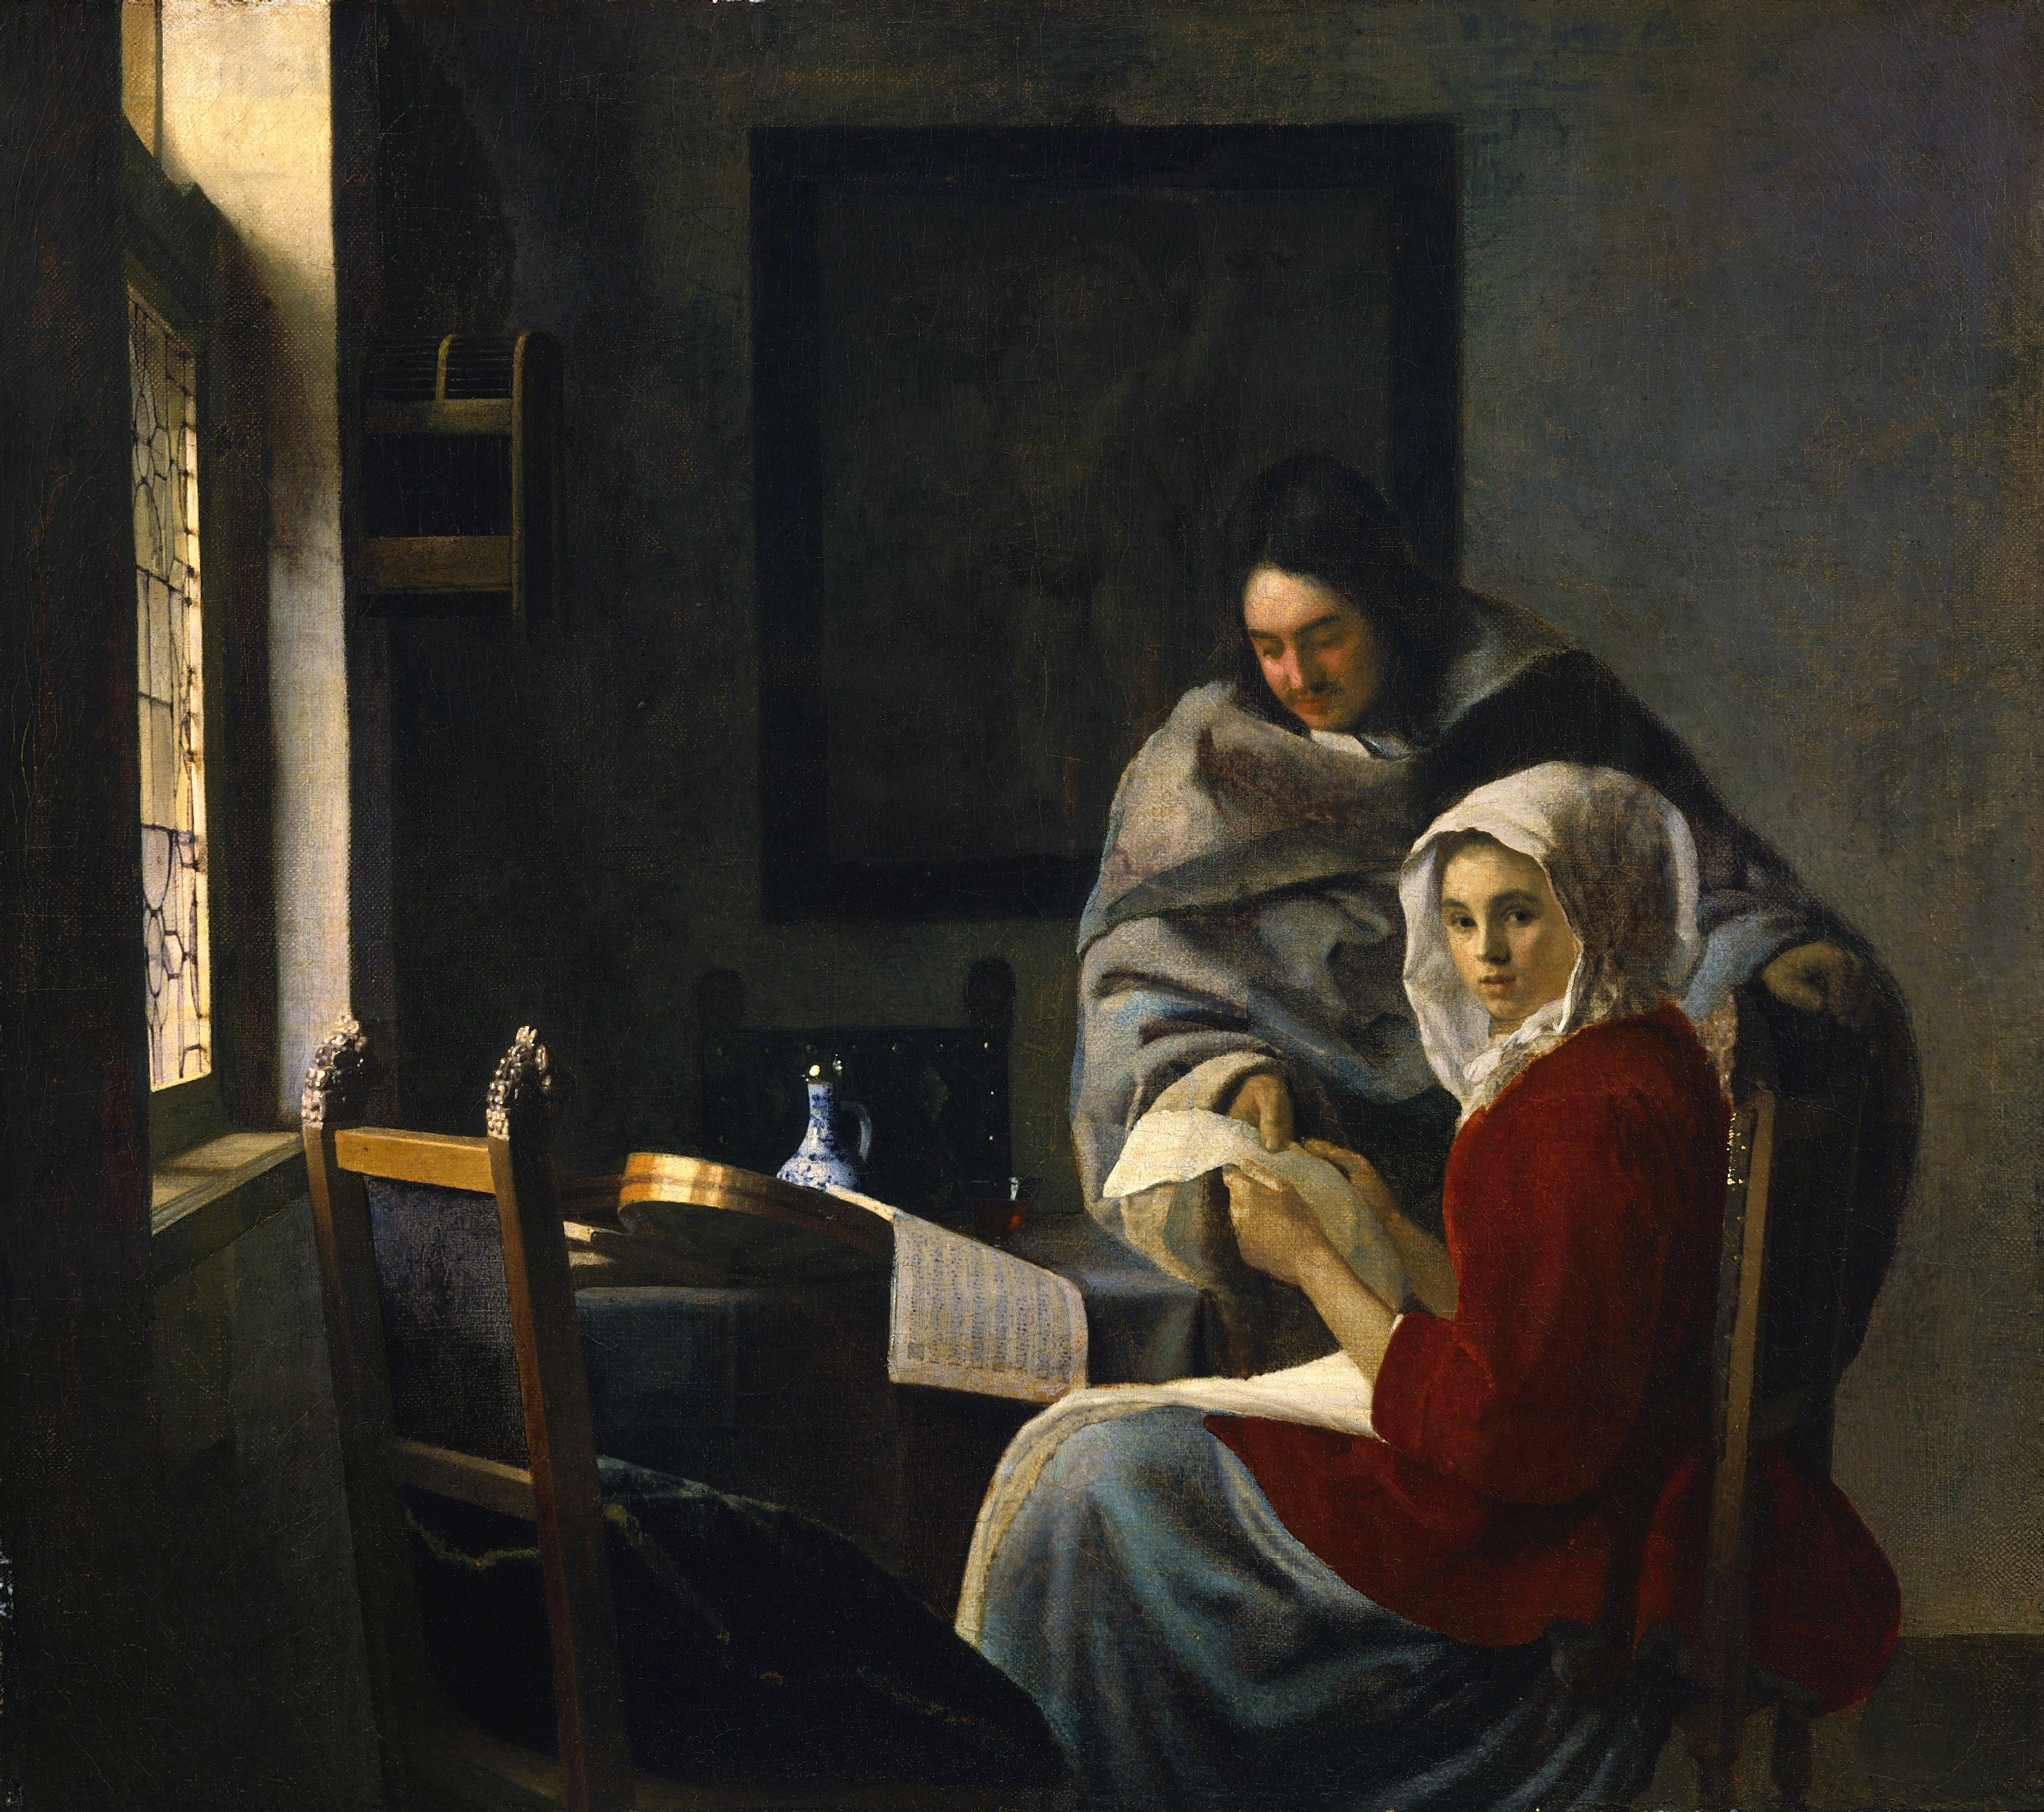 Concerto interrotto by Johannes Vermeer - ca. 1658–59 - 39,40 x 44,50 cm 